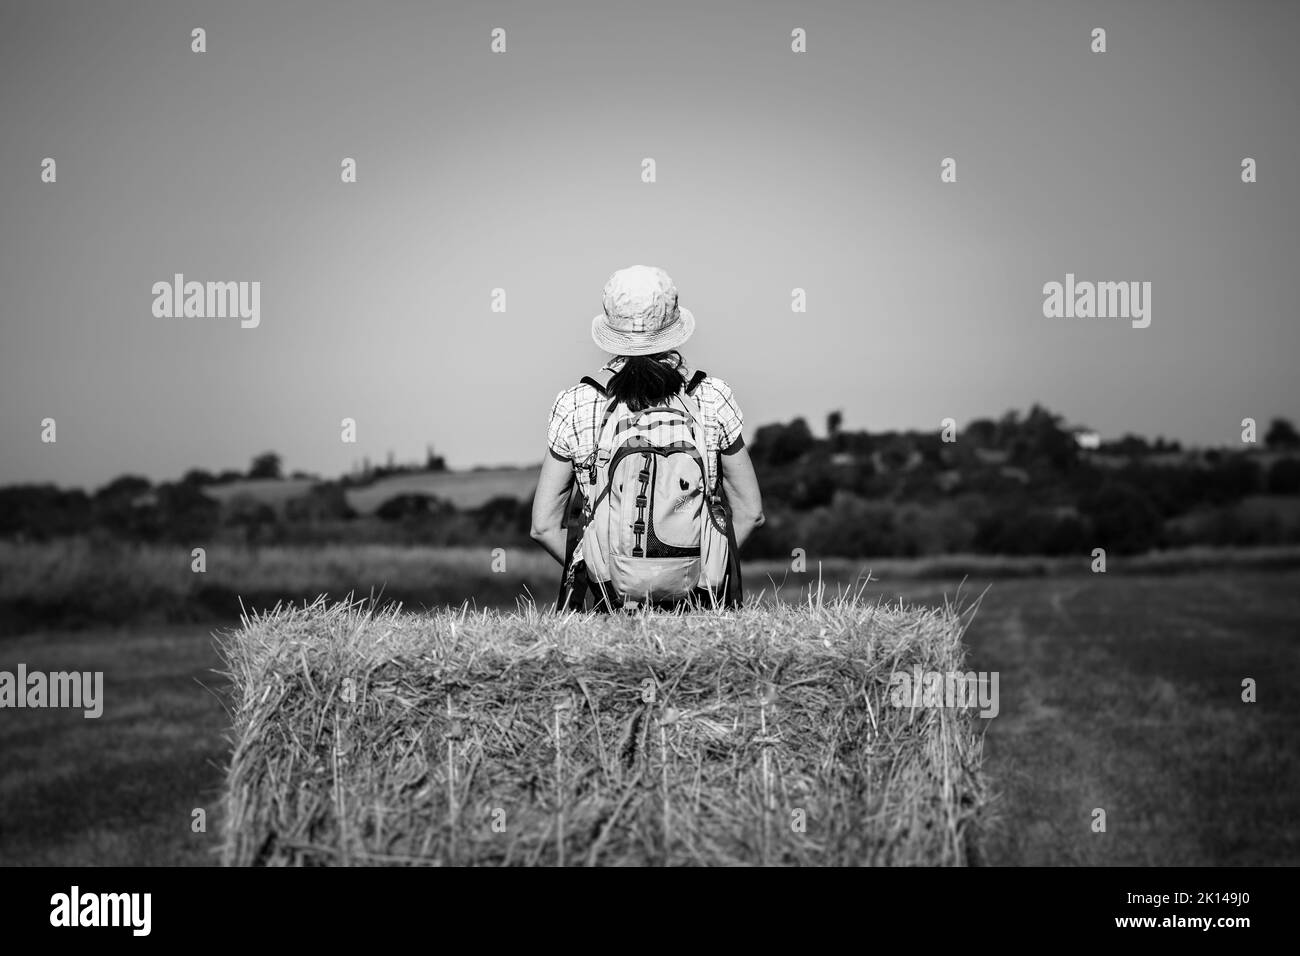 Photo de vue arrière en noir et blanc d'une femme randonneuse avec sac à dos et chapeau de soleil d'été, assise isolée sur une balle de foin regardant vers la campagne ouverte du Royaume-Uni. Banque D'Images